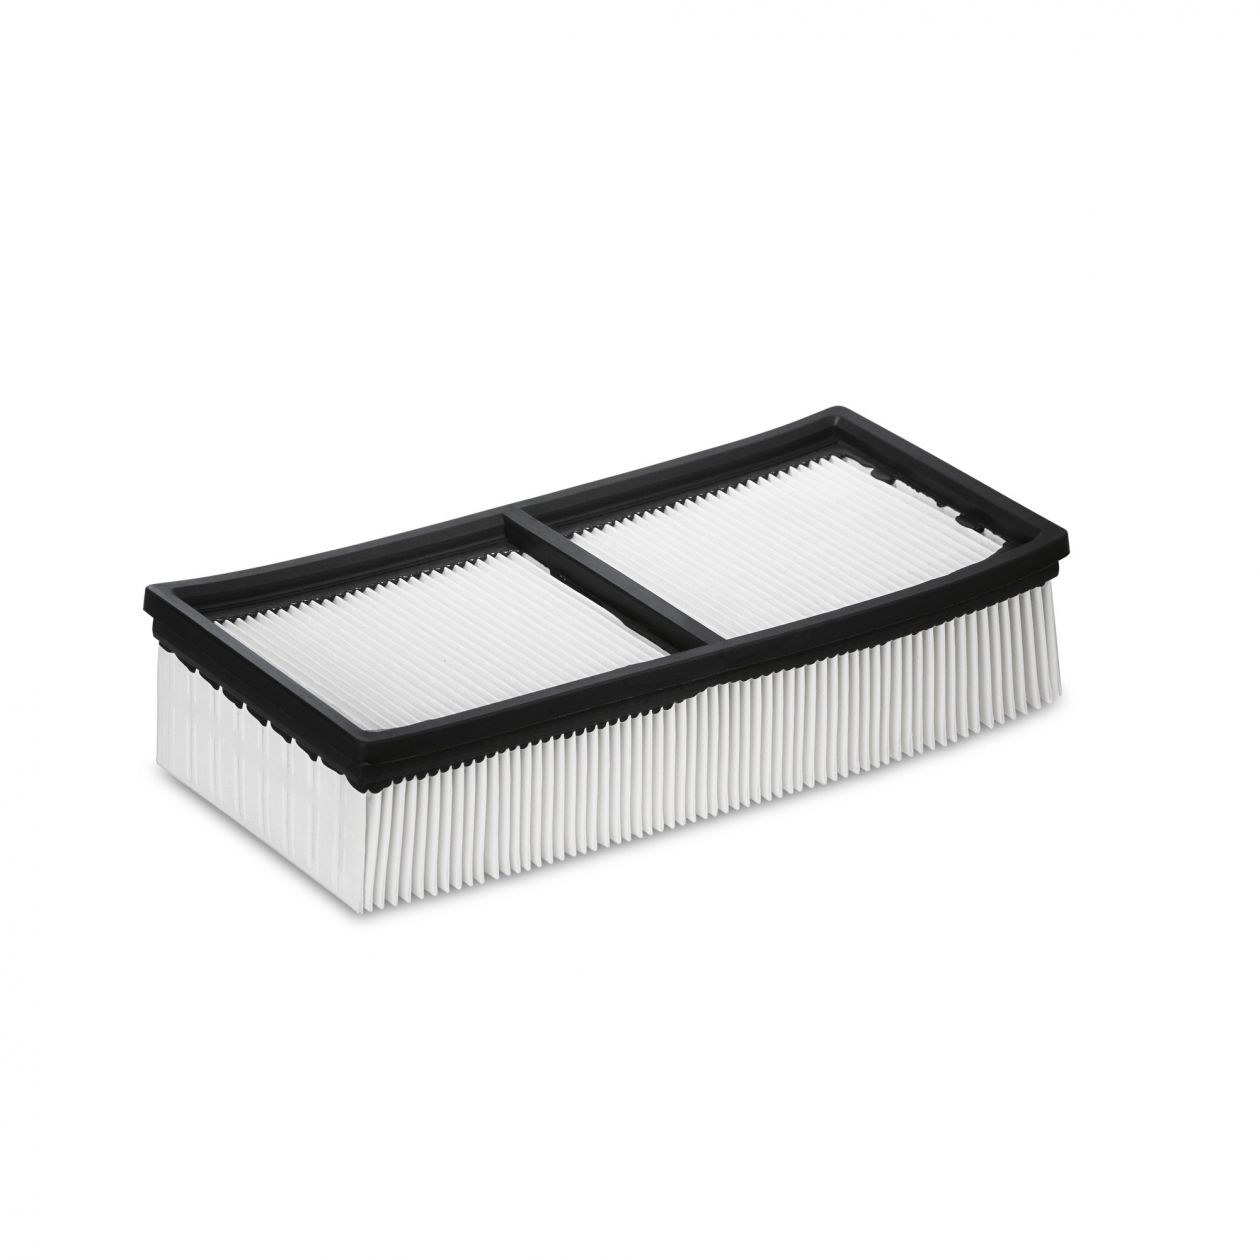 Плоский складчатый фильтр из полиэфирного шелка Karcher для пылесосов NT 65/2 Tact2 и 75/2 Tact2